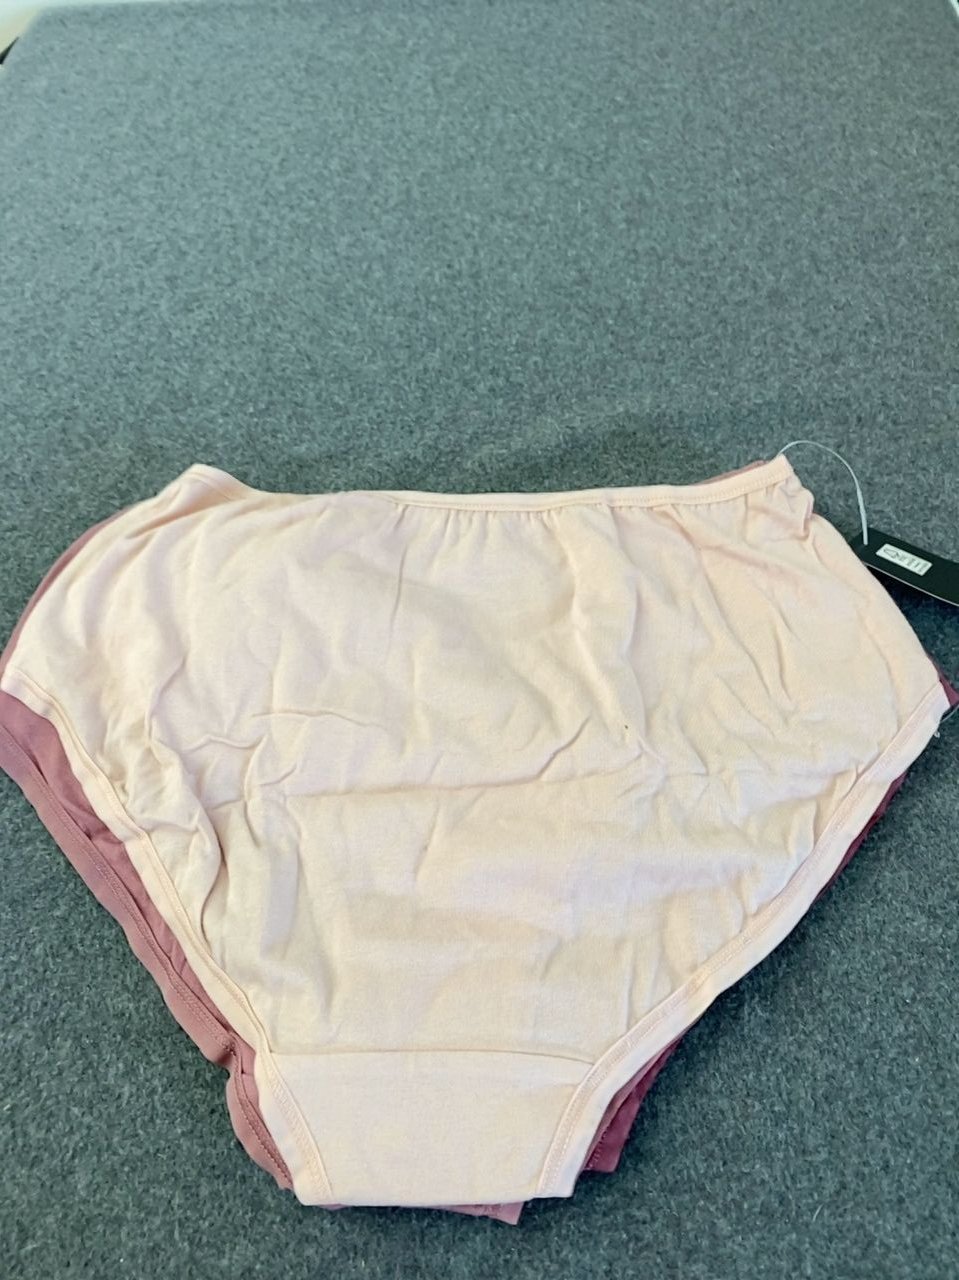 Dámské spodní prádlo - kalhotky Esmara Vel. M, 4 ks